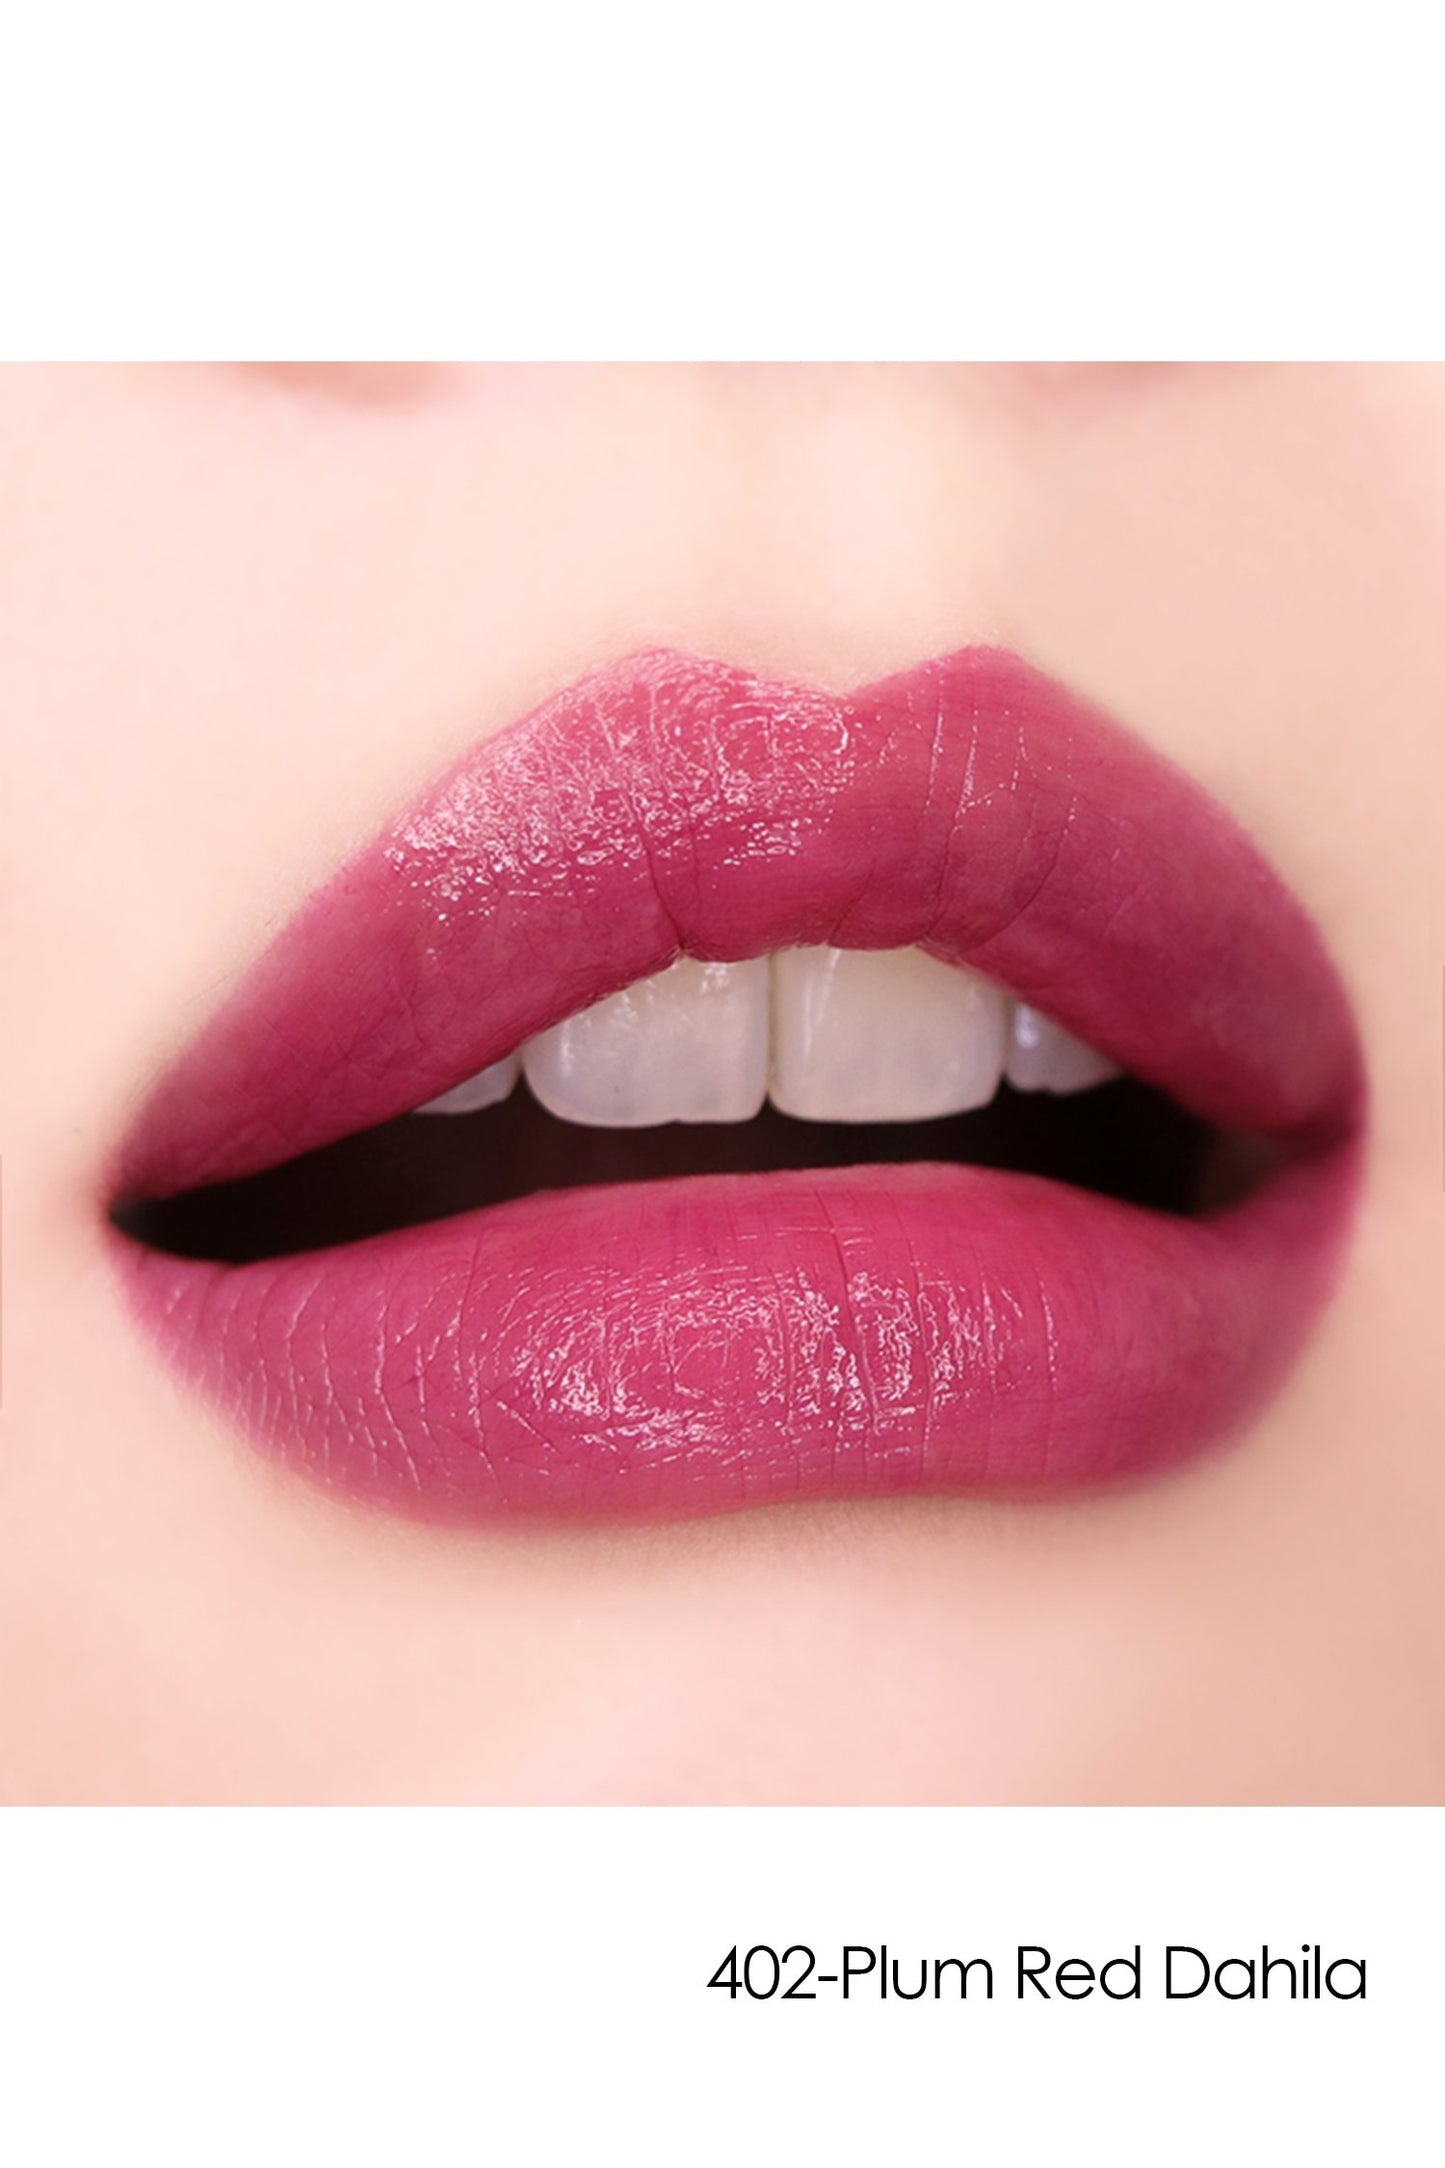 Lipstick S: Sheer Flower  402-Plum Red Dahila on lips